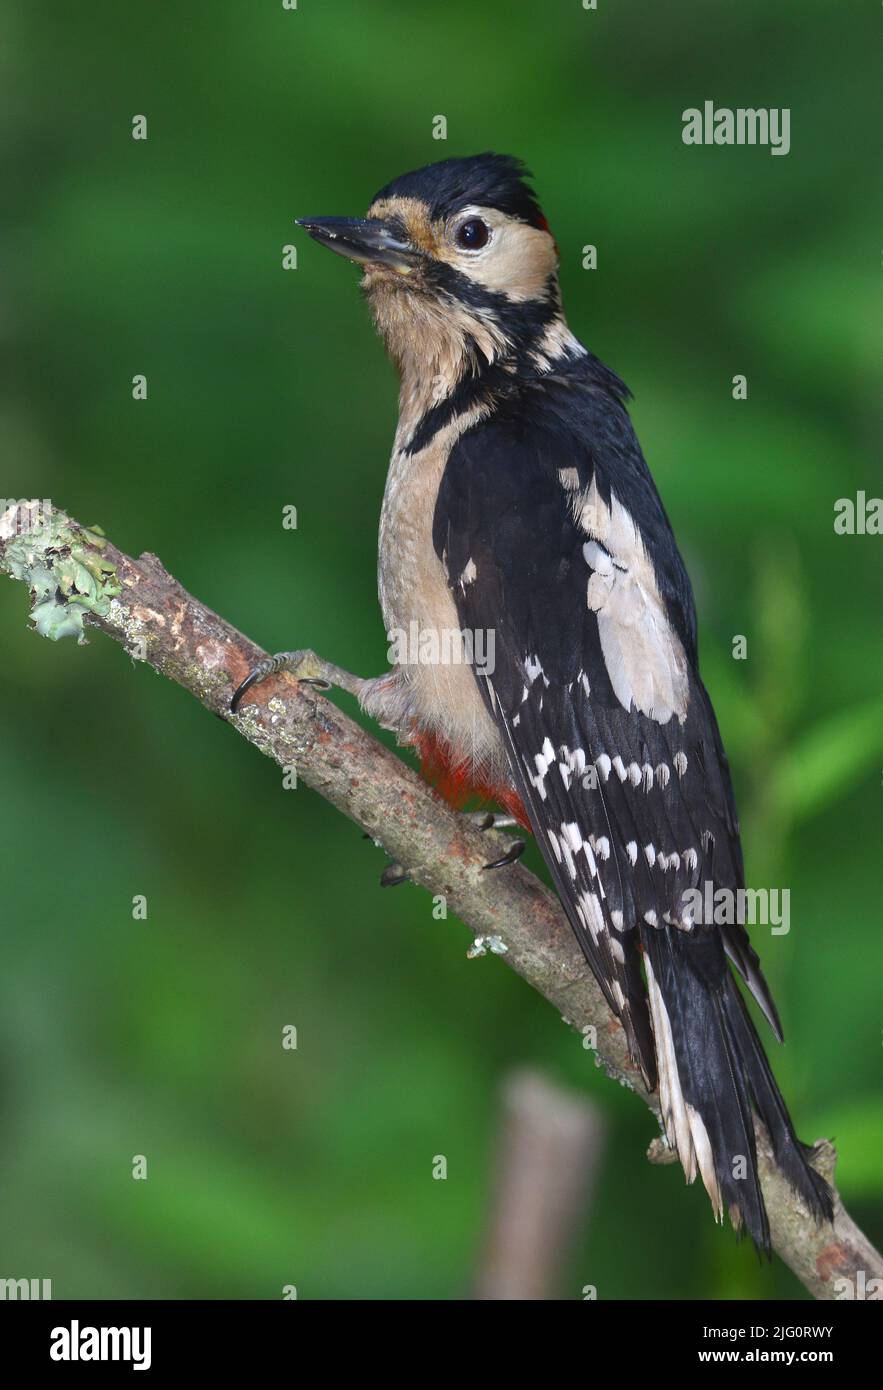 Mujer adulta con un gran pájaro carpintero con manchas en una postura agresiva Foto de stock